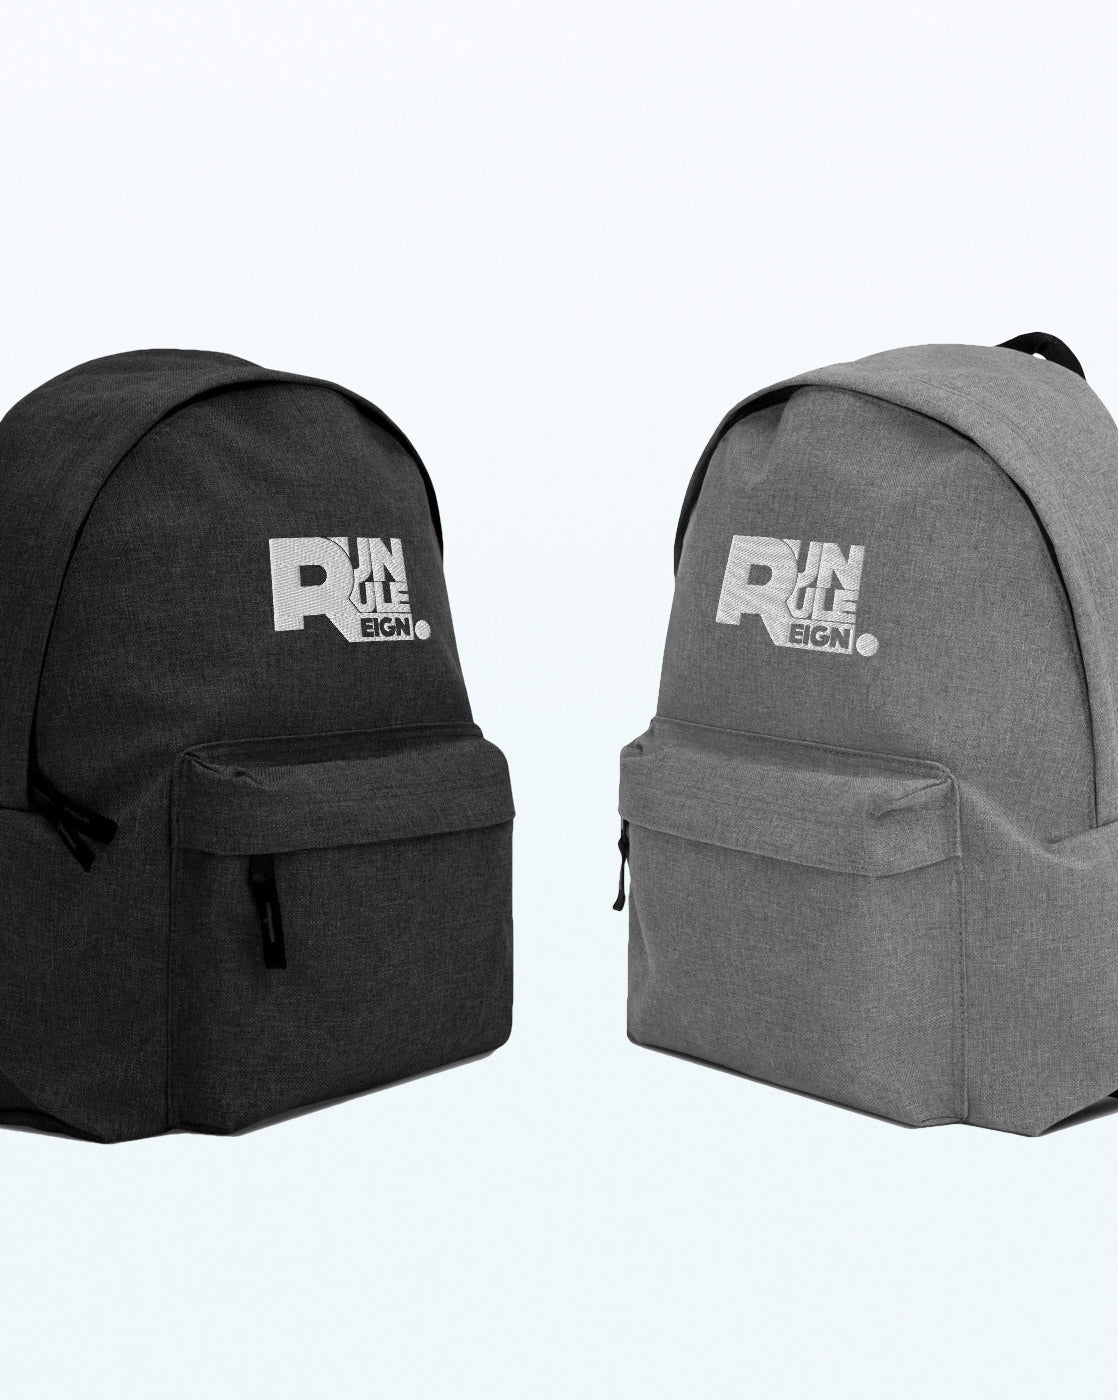 RUN RULE REIGN™ Classic Essential Bag